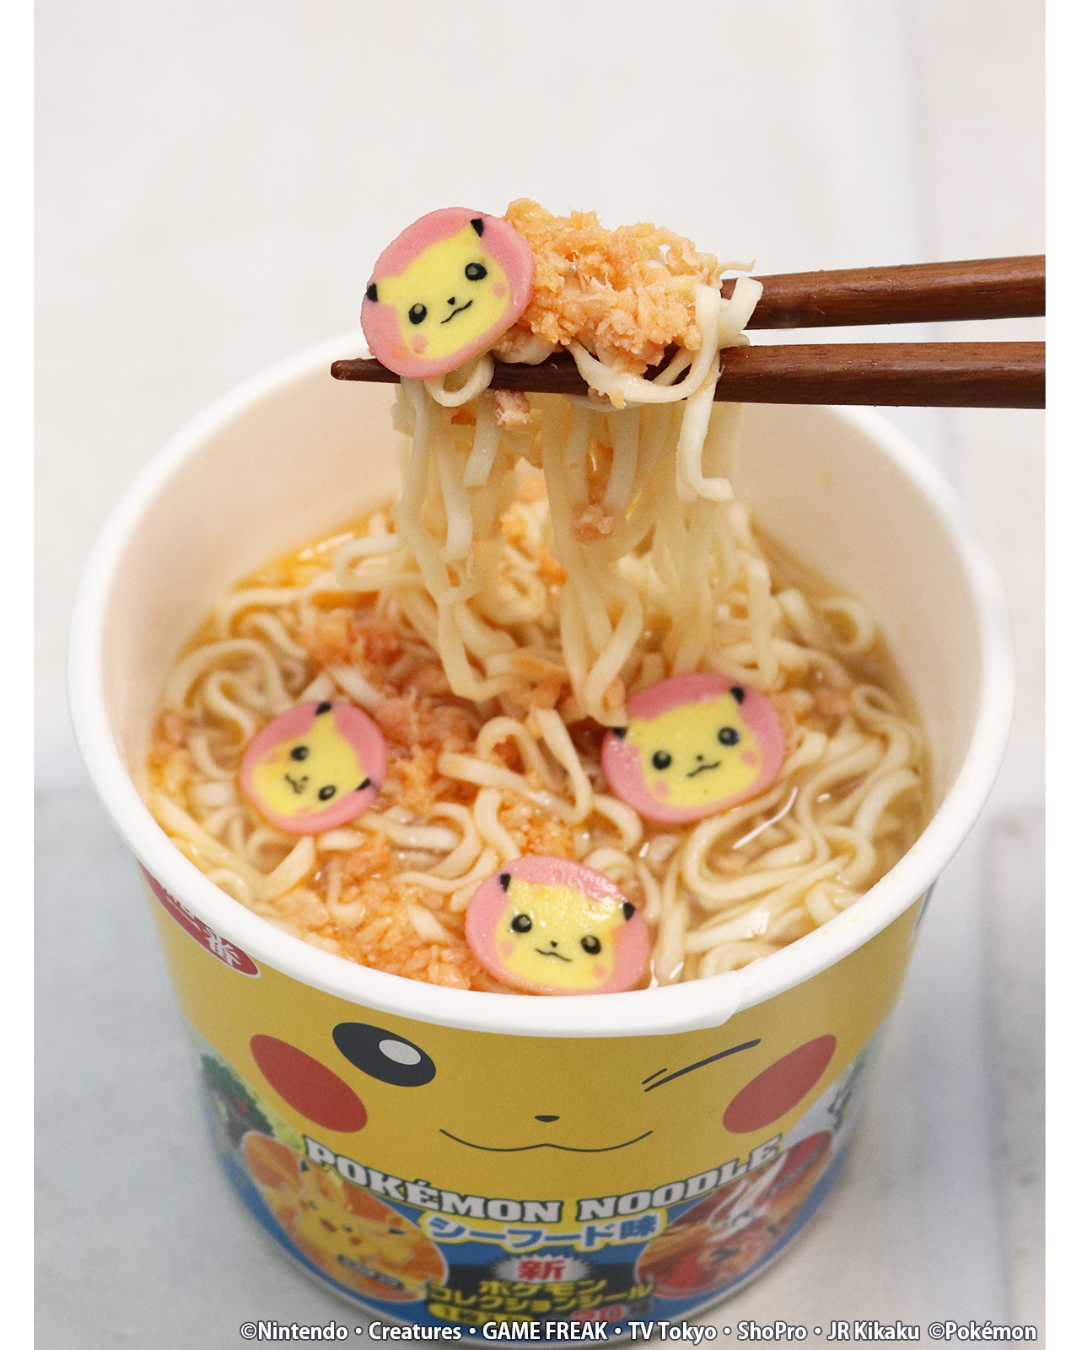 Sanyo Sapporo Ichiban Pokémon Seafood Noodles